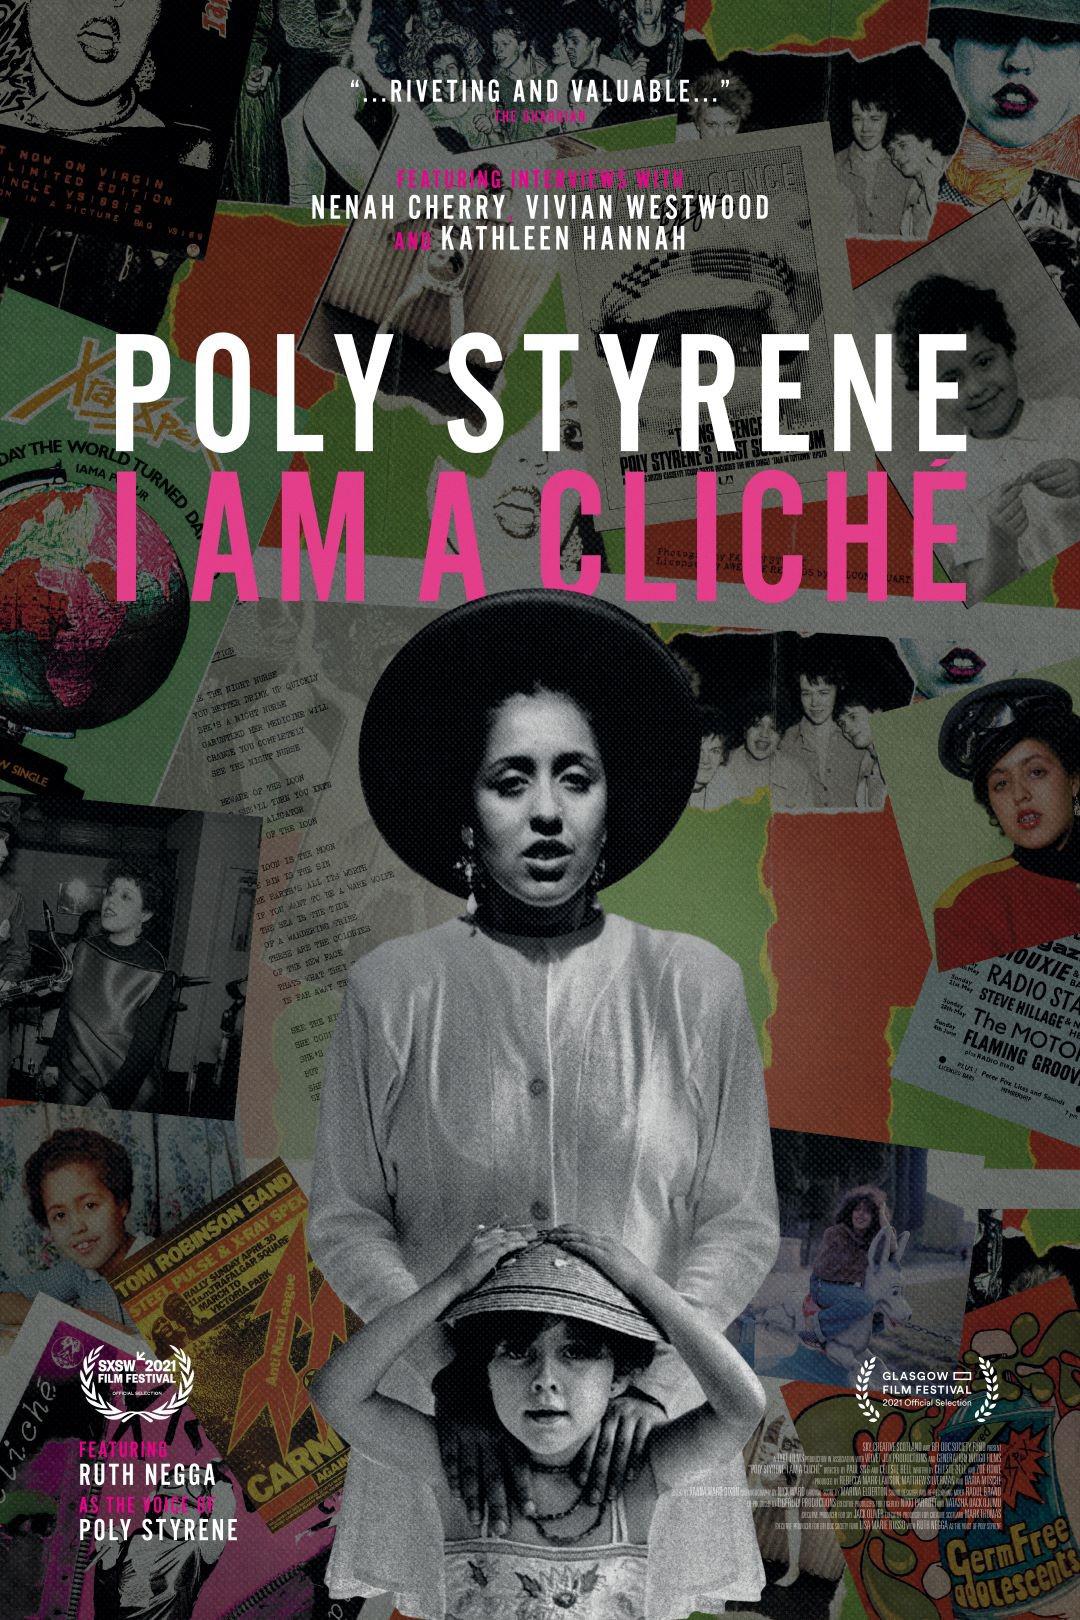 Poly Styrene: I Am a Cliche